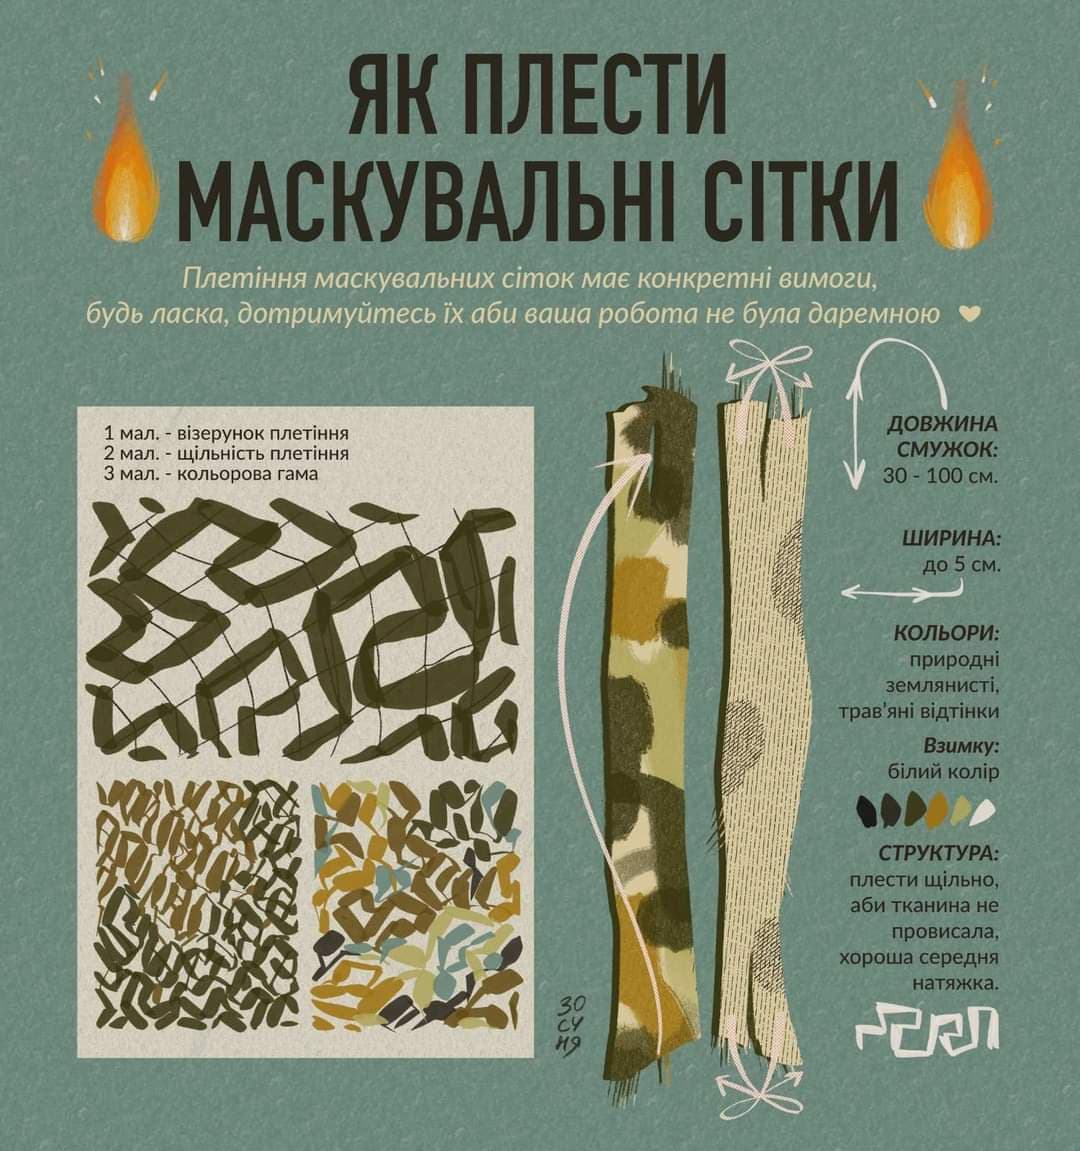 Piwniczan-Zdrój, siatki maskujące dla wojska ukraińskiego